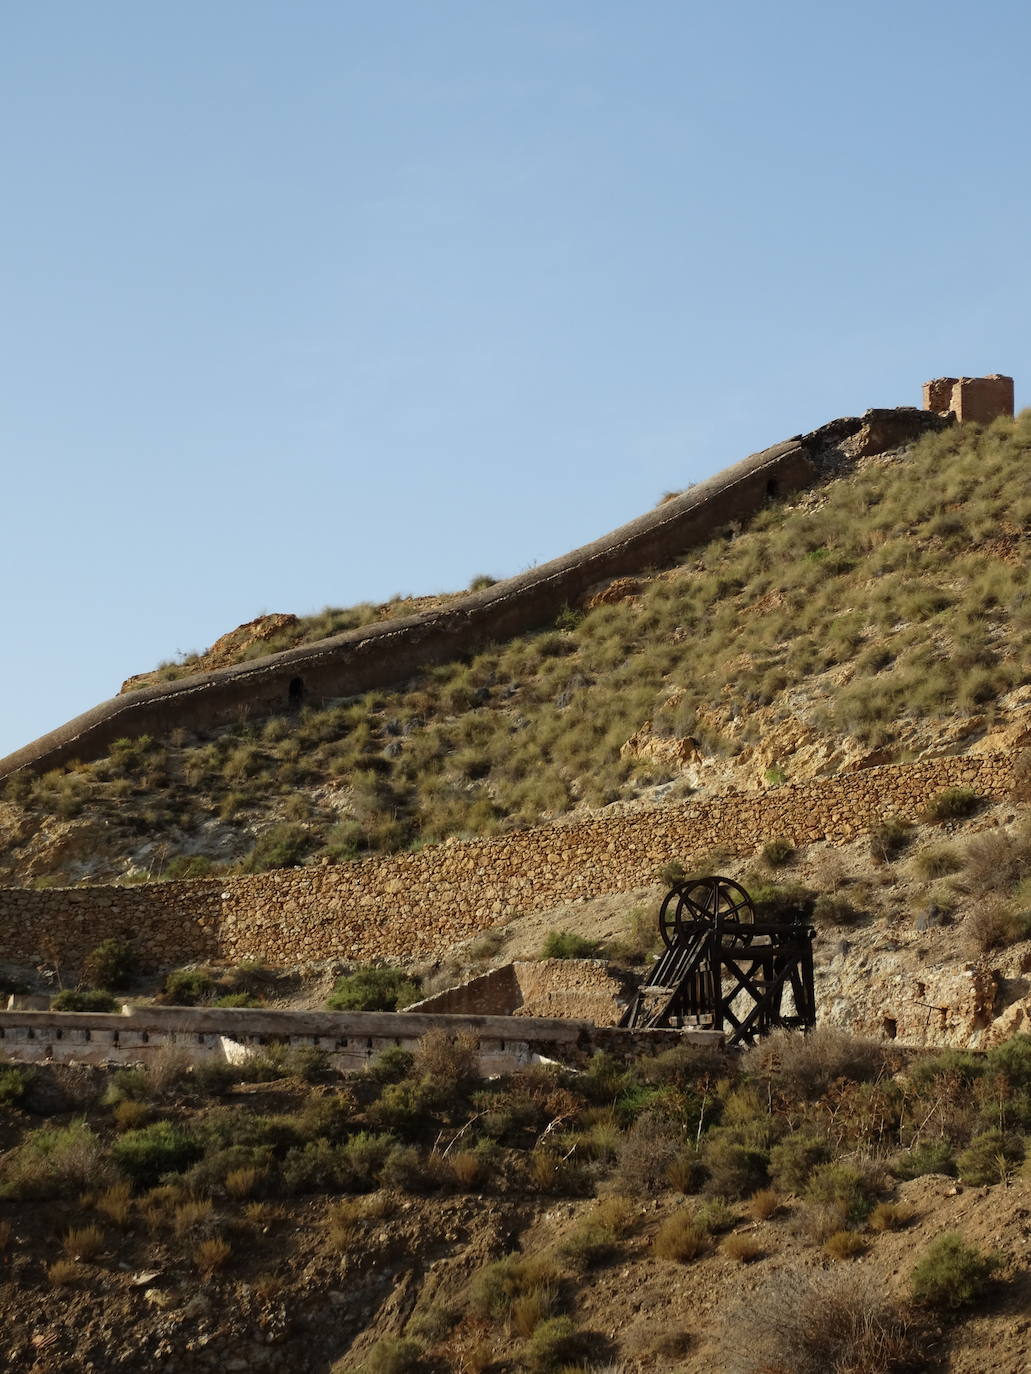 Conducción de una de las chimeneas que dominan el paisaje minero.